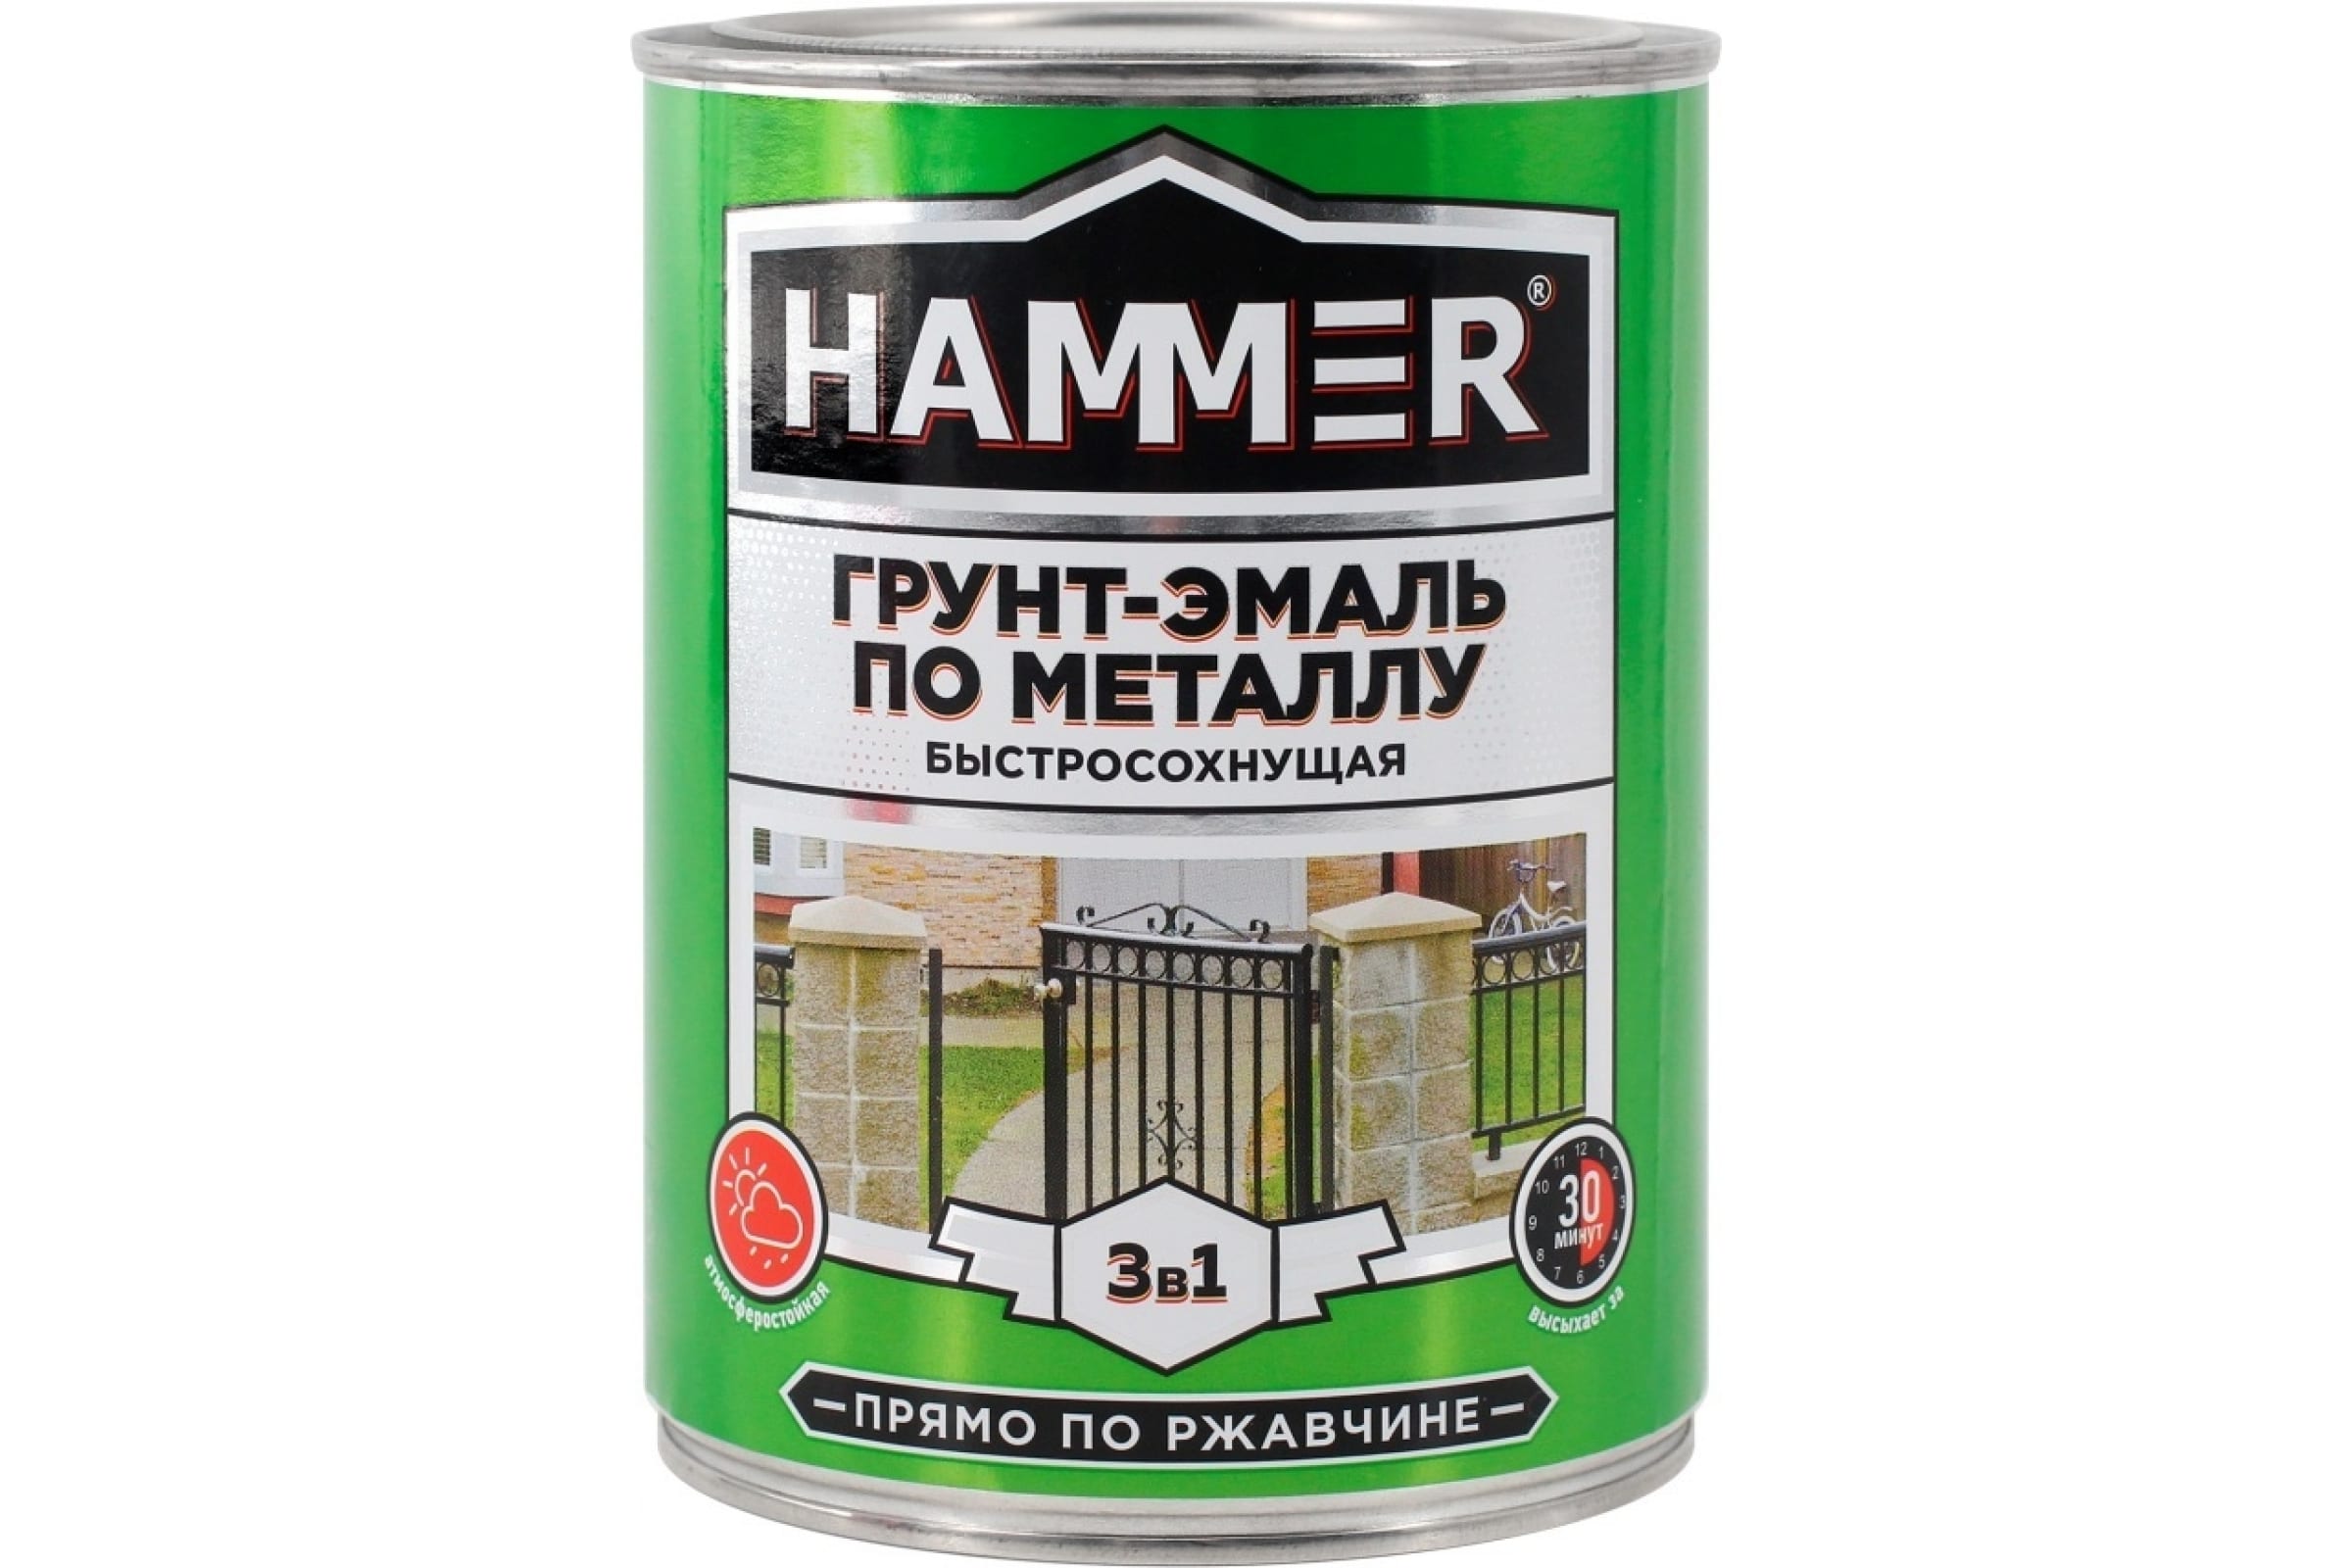 HAMMER Грунт-эмаль по металлу 3 в 1 б/с черная 0,9 кг / 6 ЭК000116572 грунт эмаль decotech 3в1 черная под ral9005 1 8кг